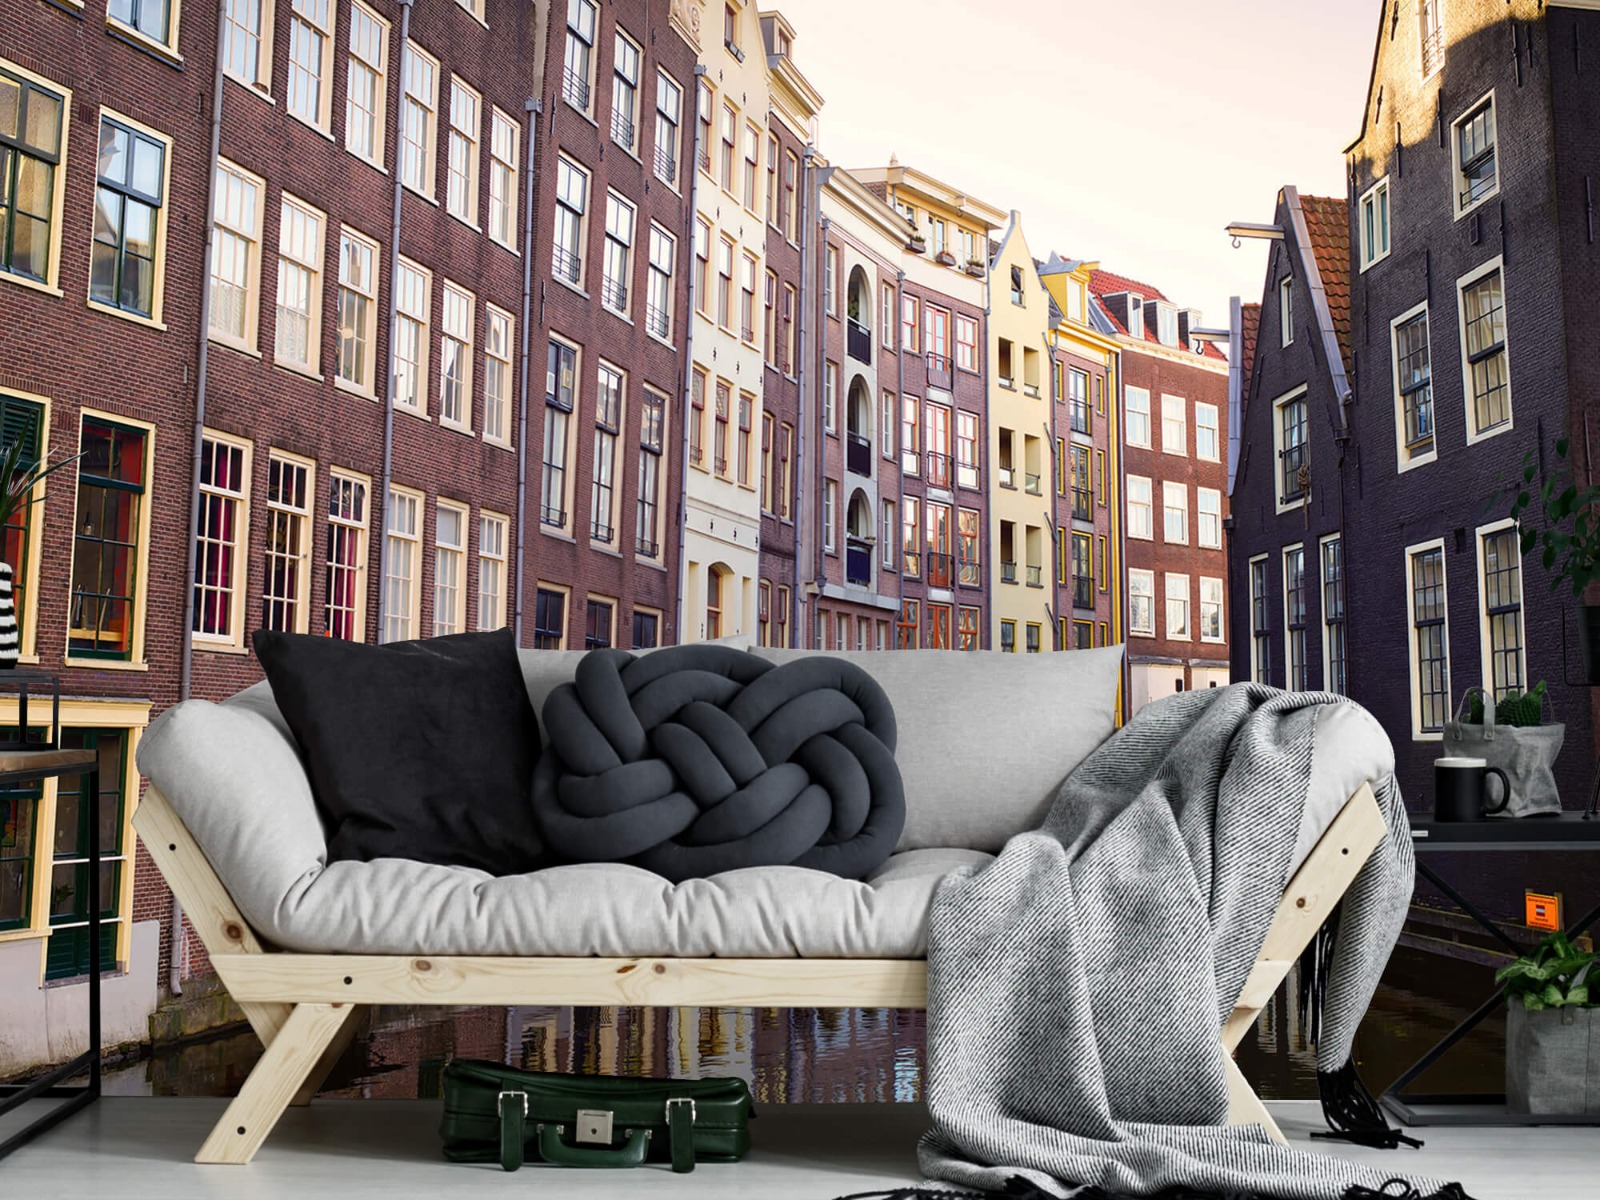 Gebouwen - Amsterdamse huizen aan de gracht - Tienerkamer 7